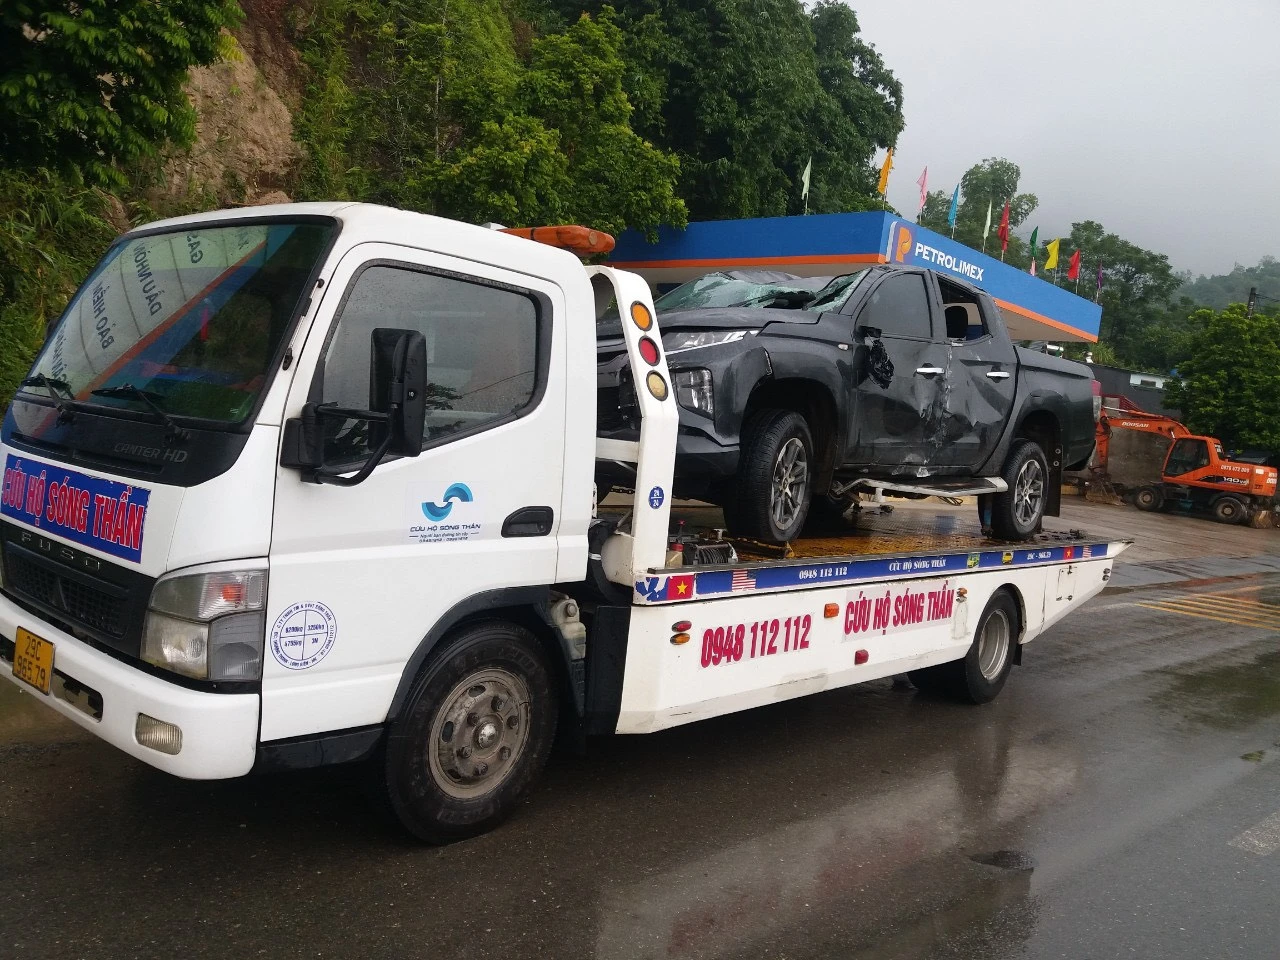 Thumbnail Cứu hộ ô tô, xe kéo, xe cẩu tại Hà Nội | Có mặt sau 5p - 0948.112.112